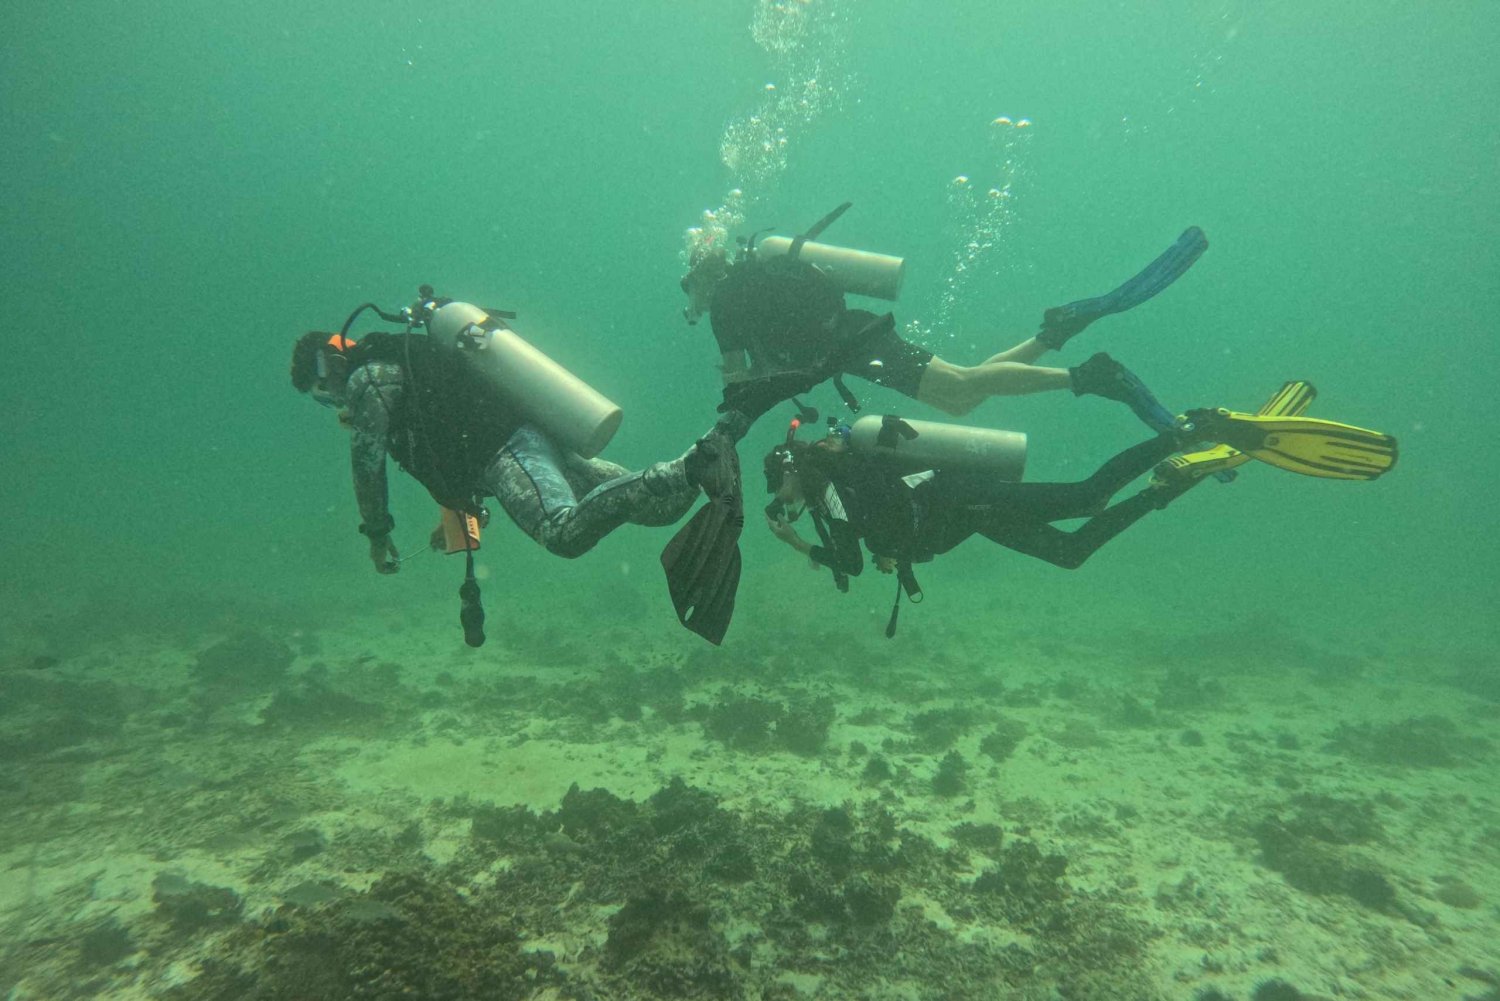 Muscat: Prøv dykking på Daymaniat-øyene